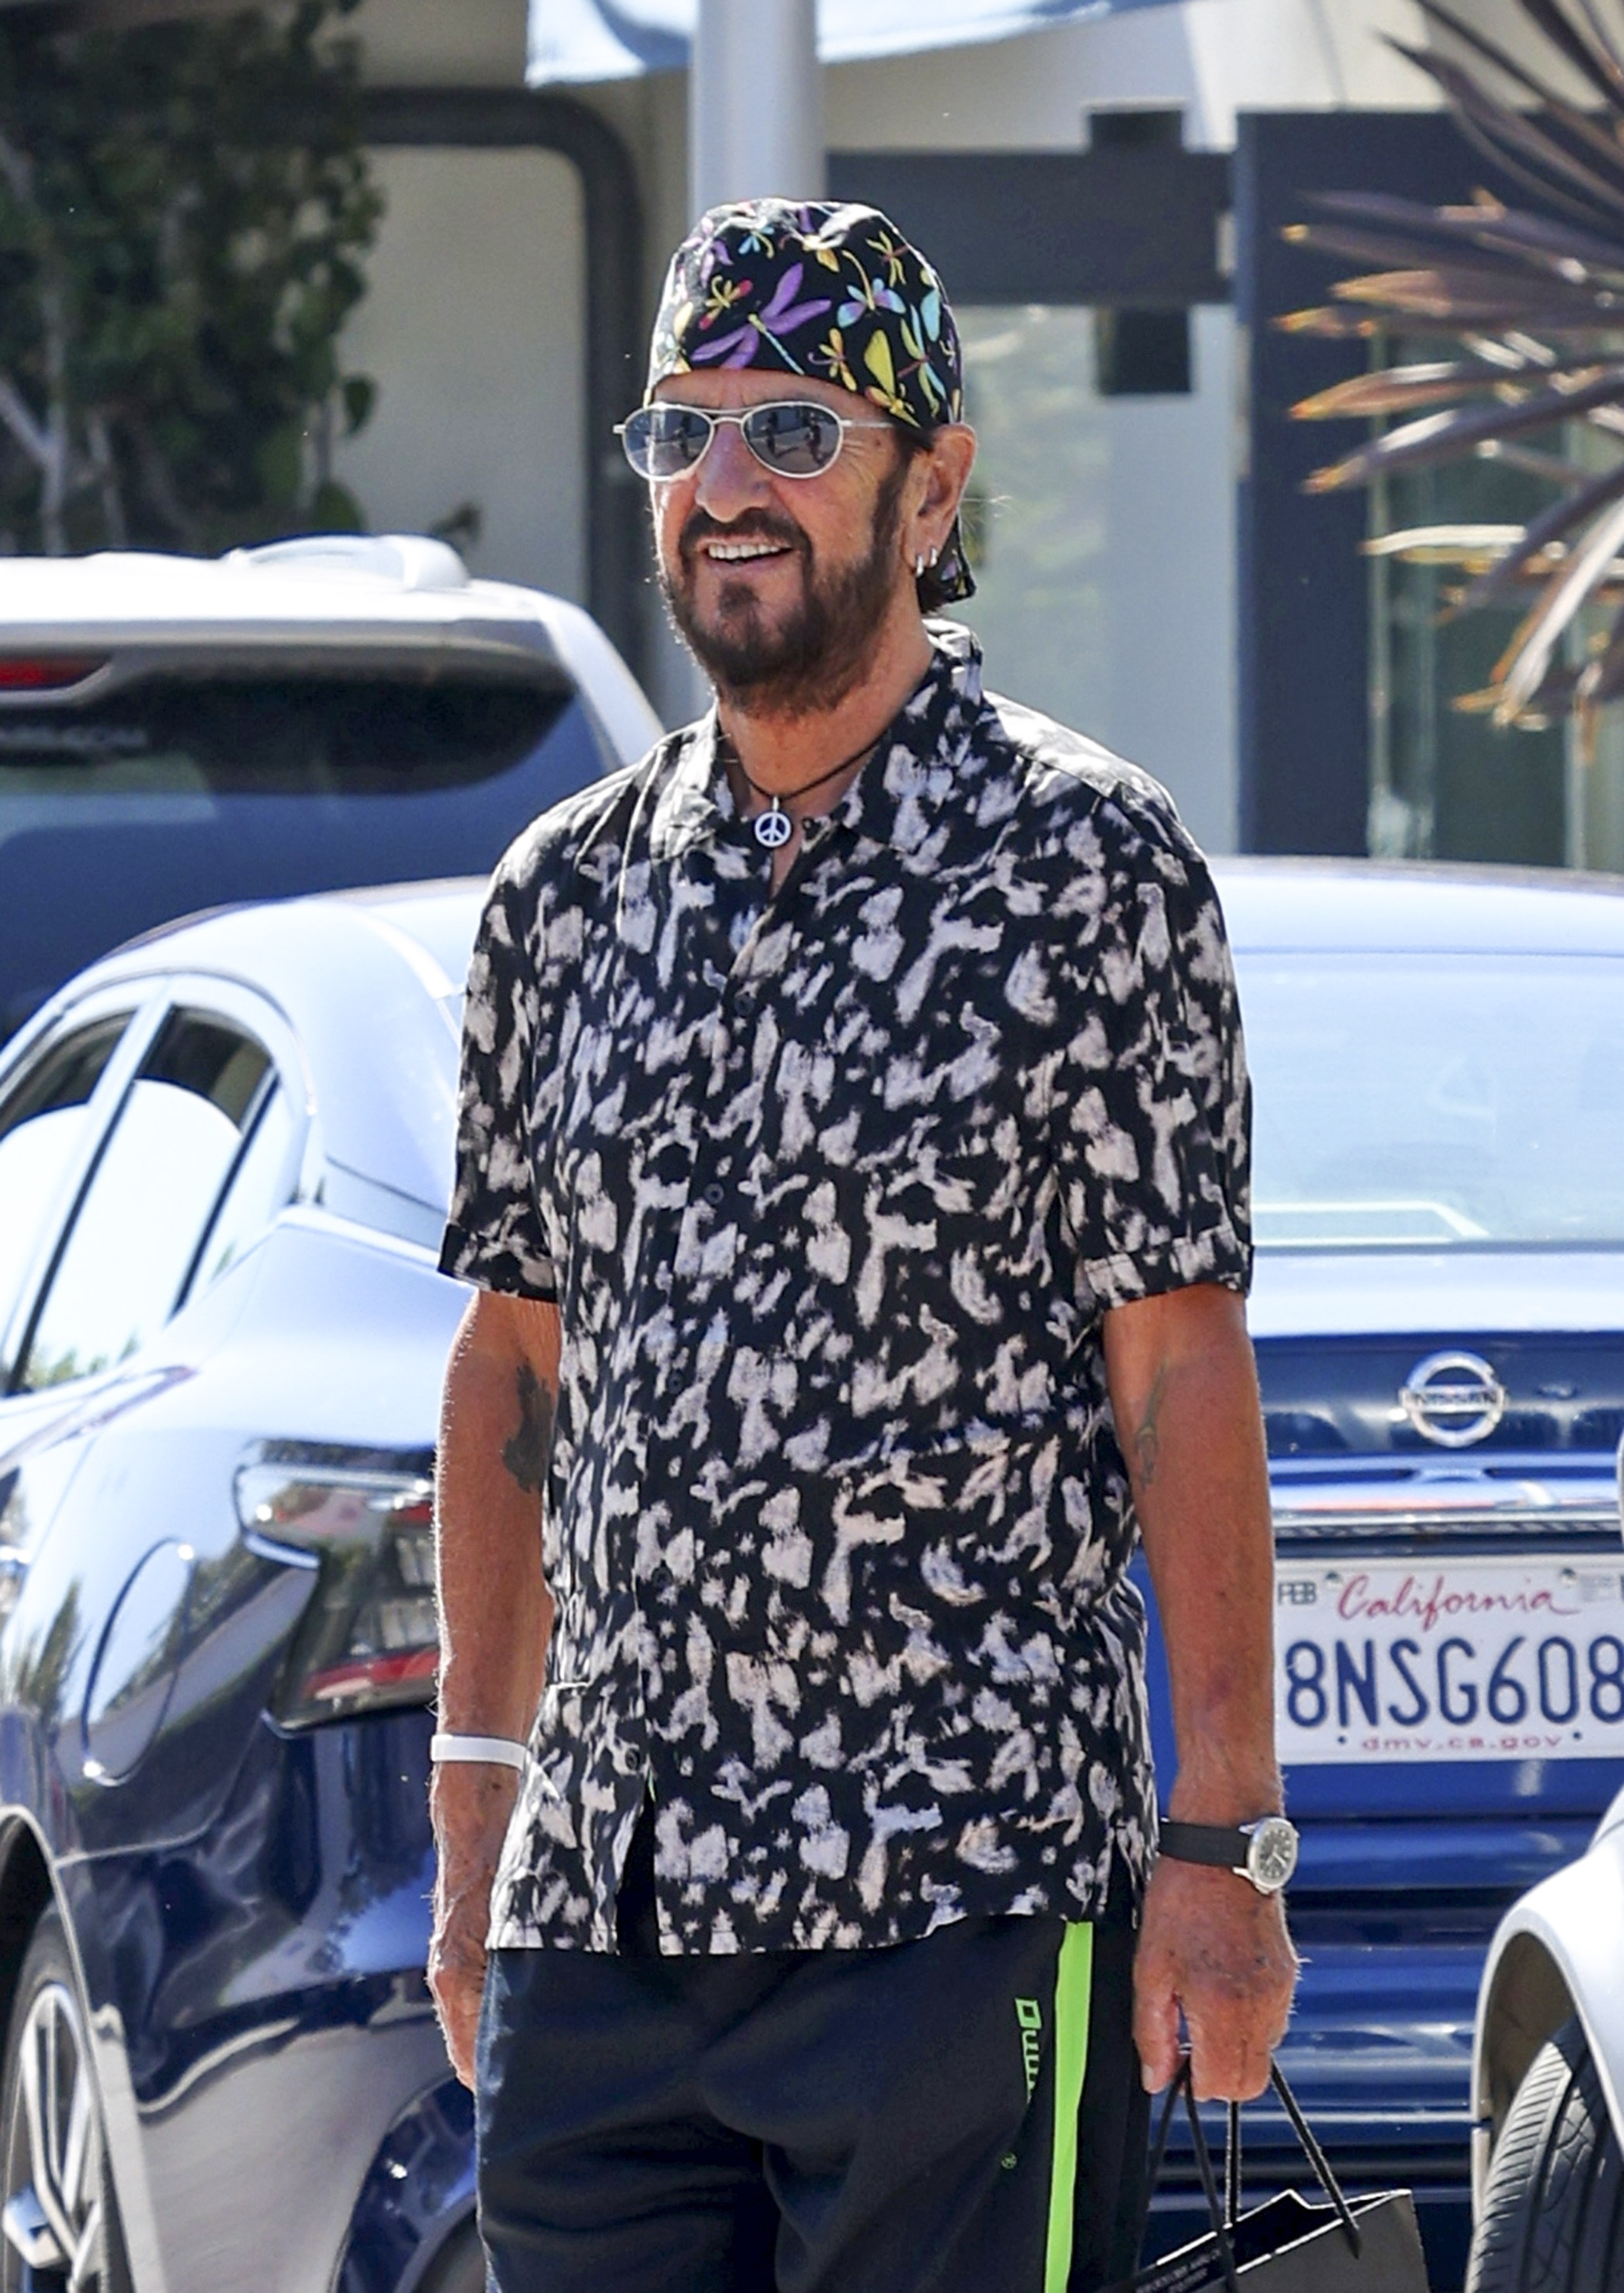 La leyenda del rock Ringo Starr se despide de algunos amigos después de ir de compras con su esposa Barbara Bach, en Malibú. El ex Beatle lució renovado con una camisa estampada combinada con un pañuelo en su cabeza, también estampado